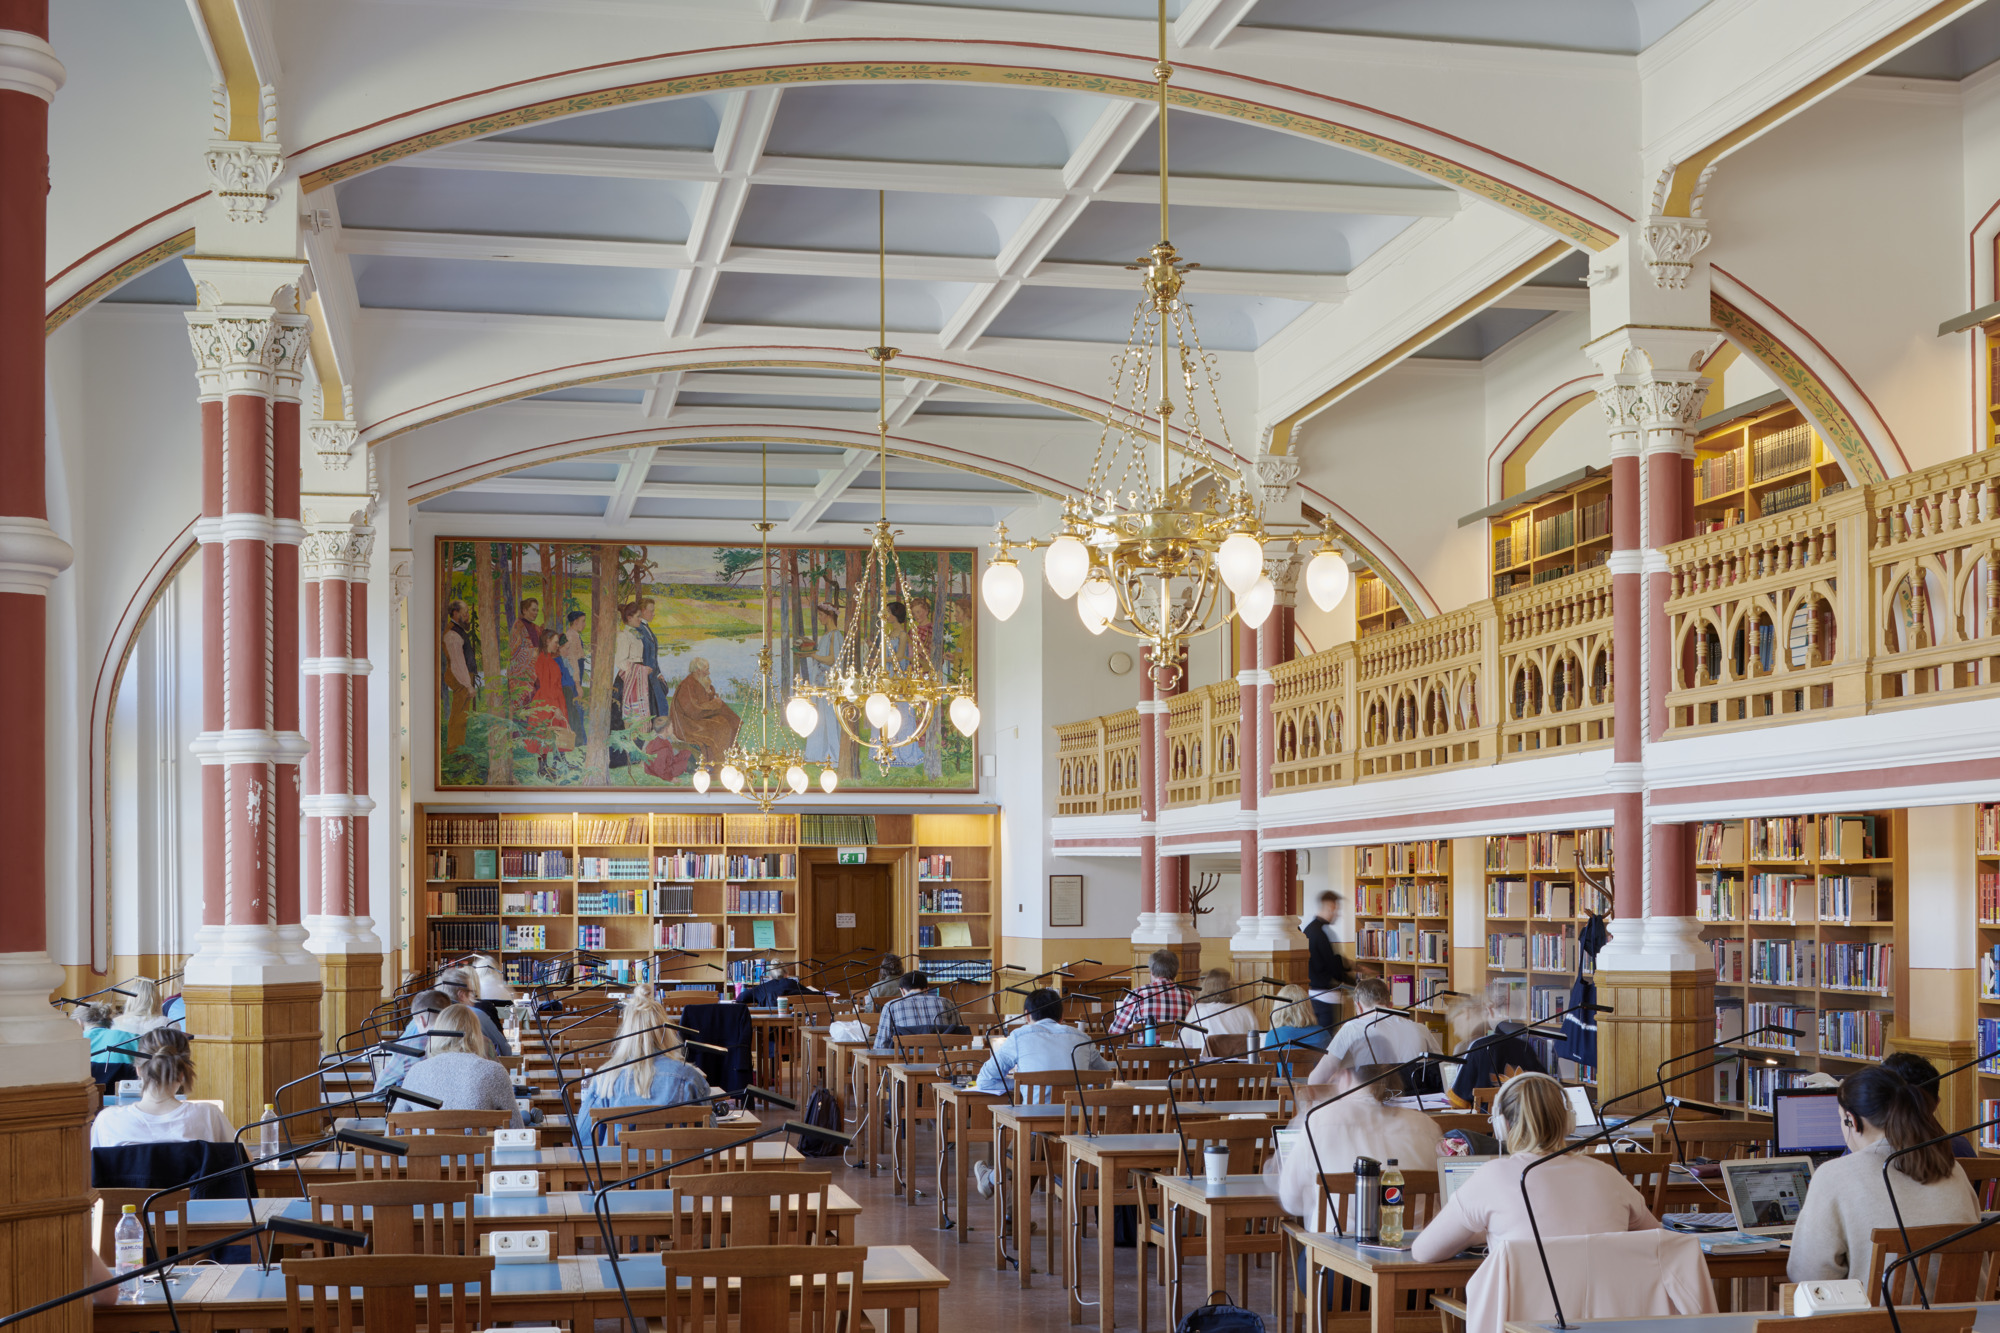 Interiör i sal med pelare, böcker och människor som läser